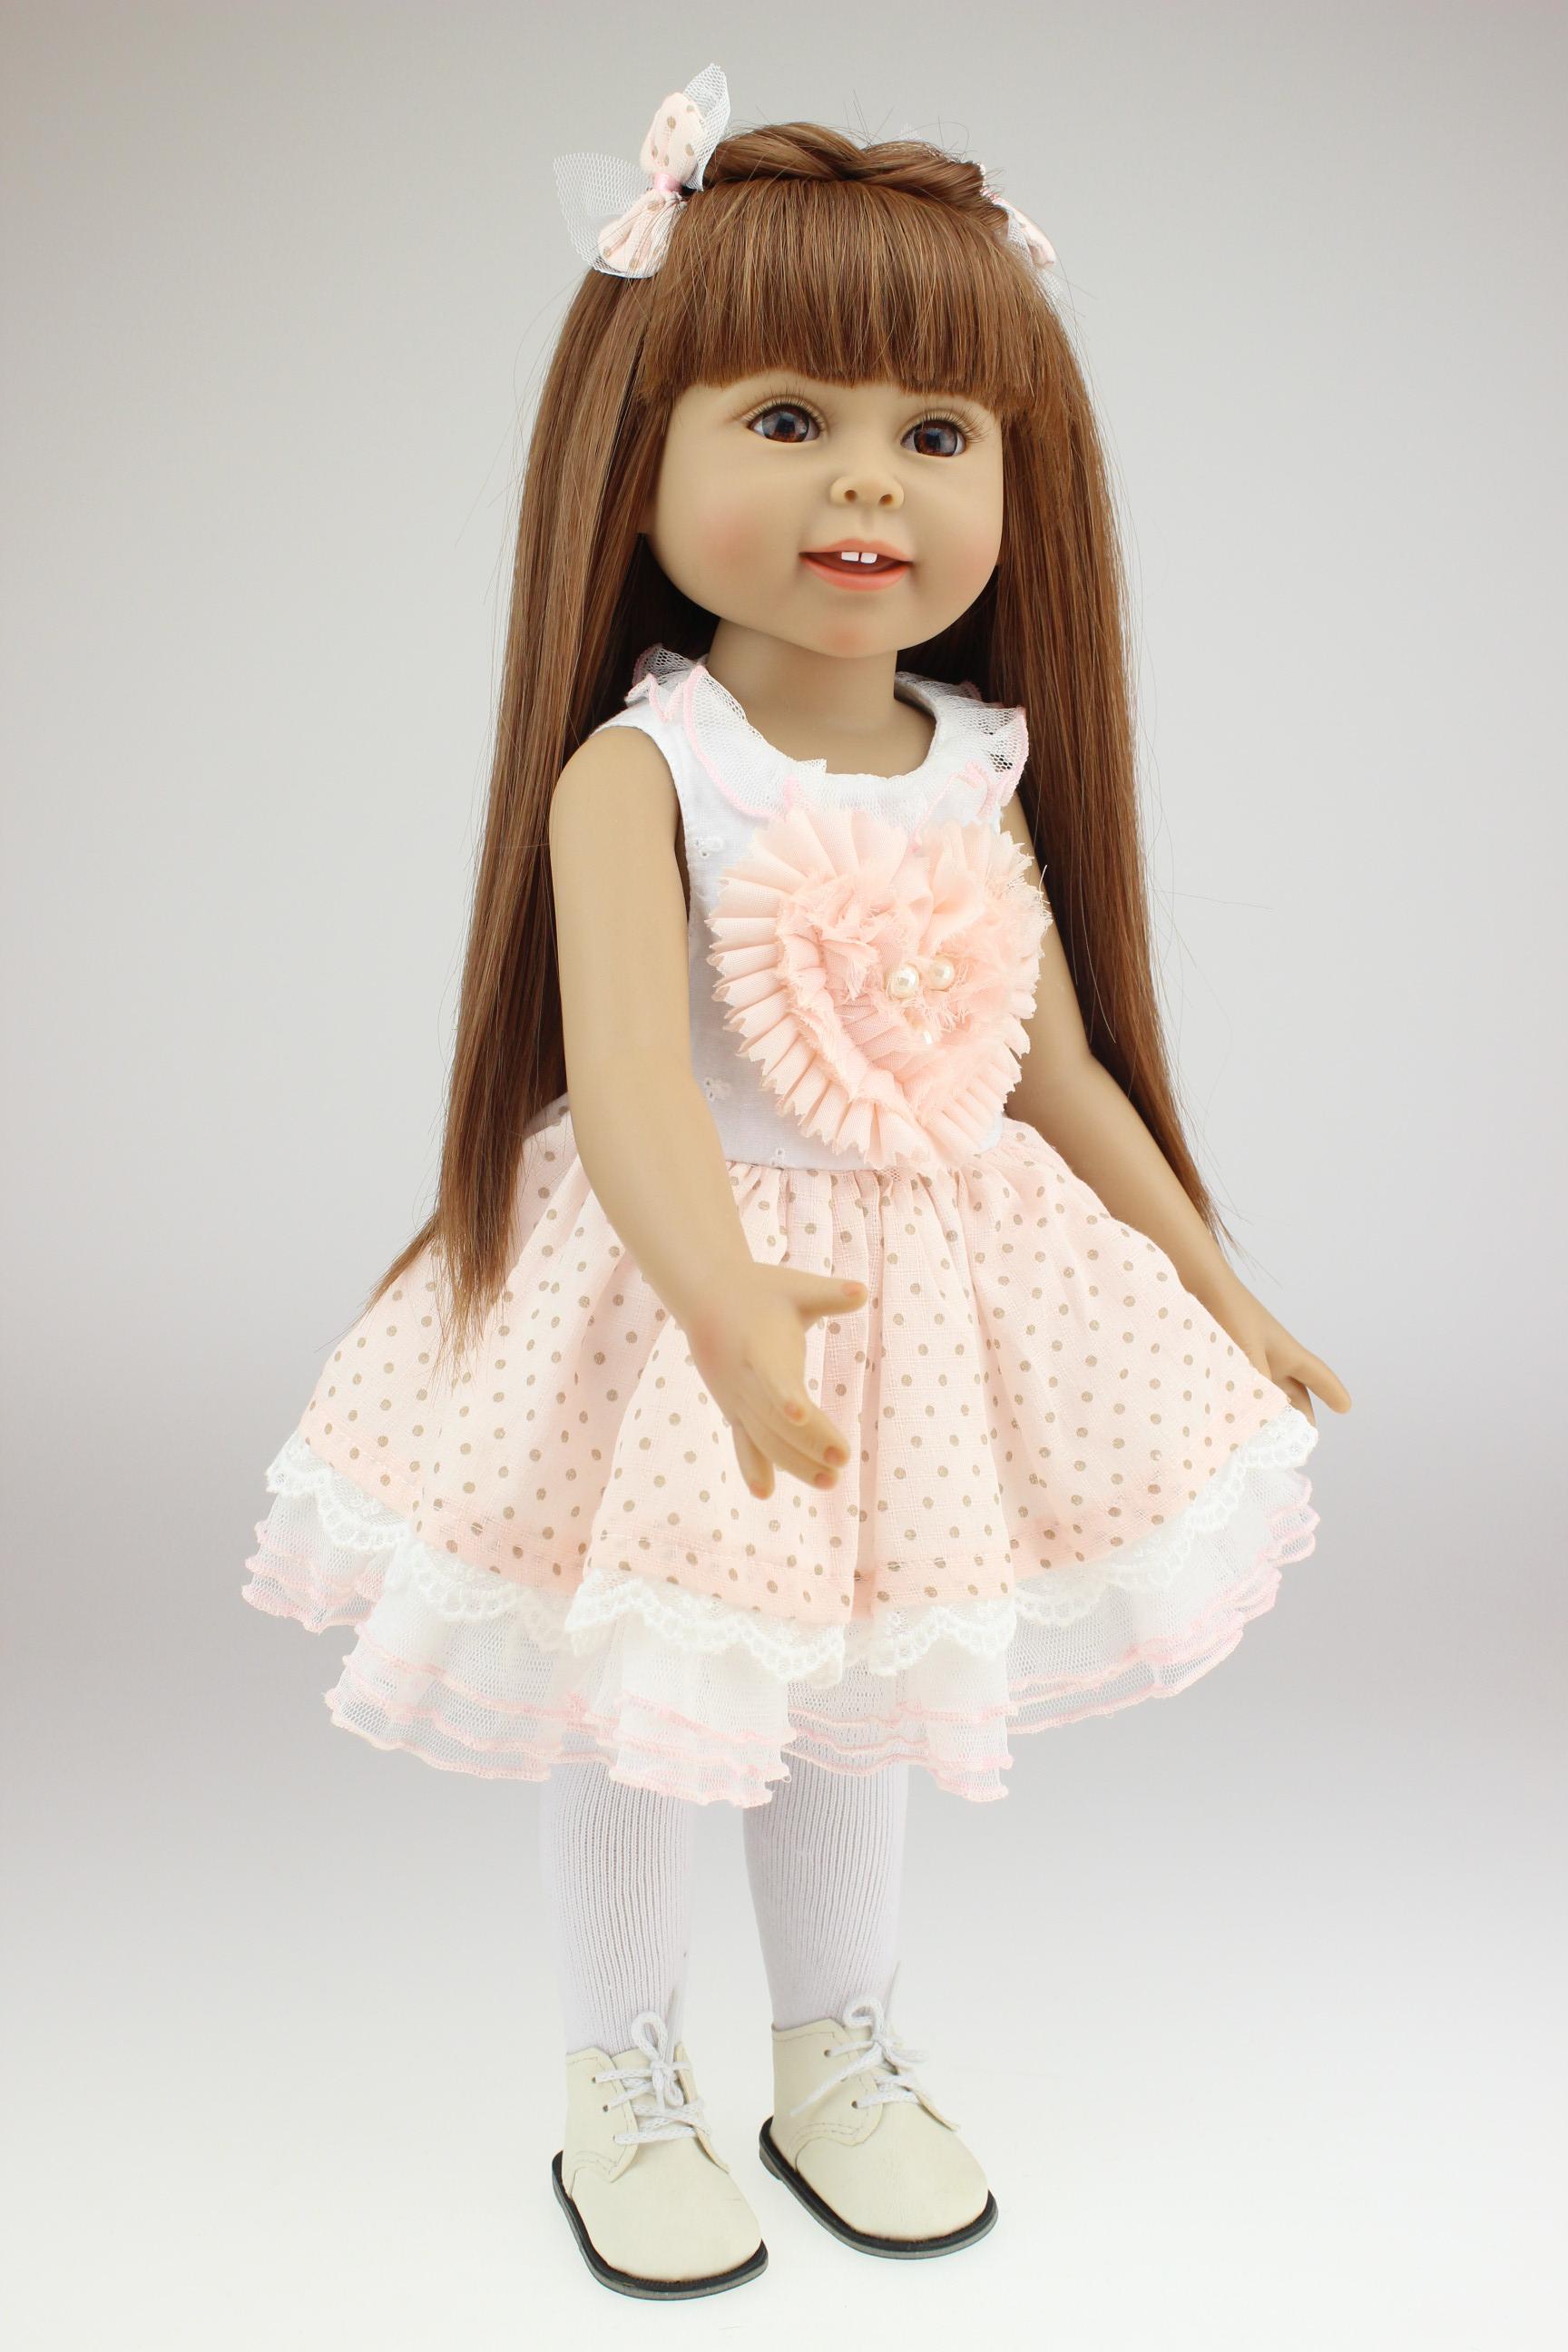 18inch 45cm Girl Toy Doll Lifelike Movable Full Vinyl Body Smile ...